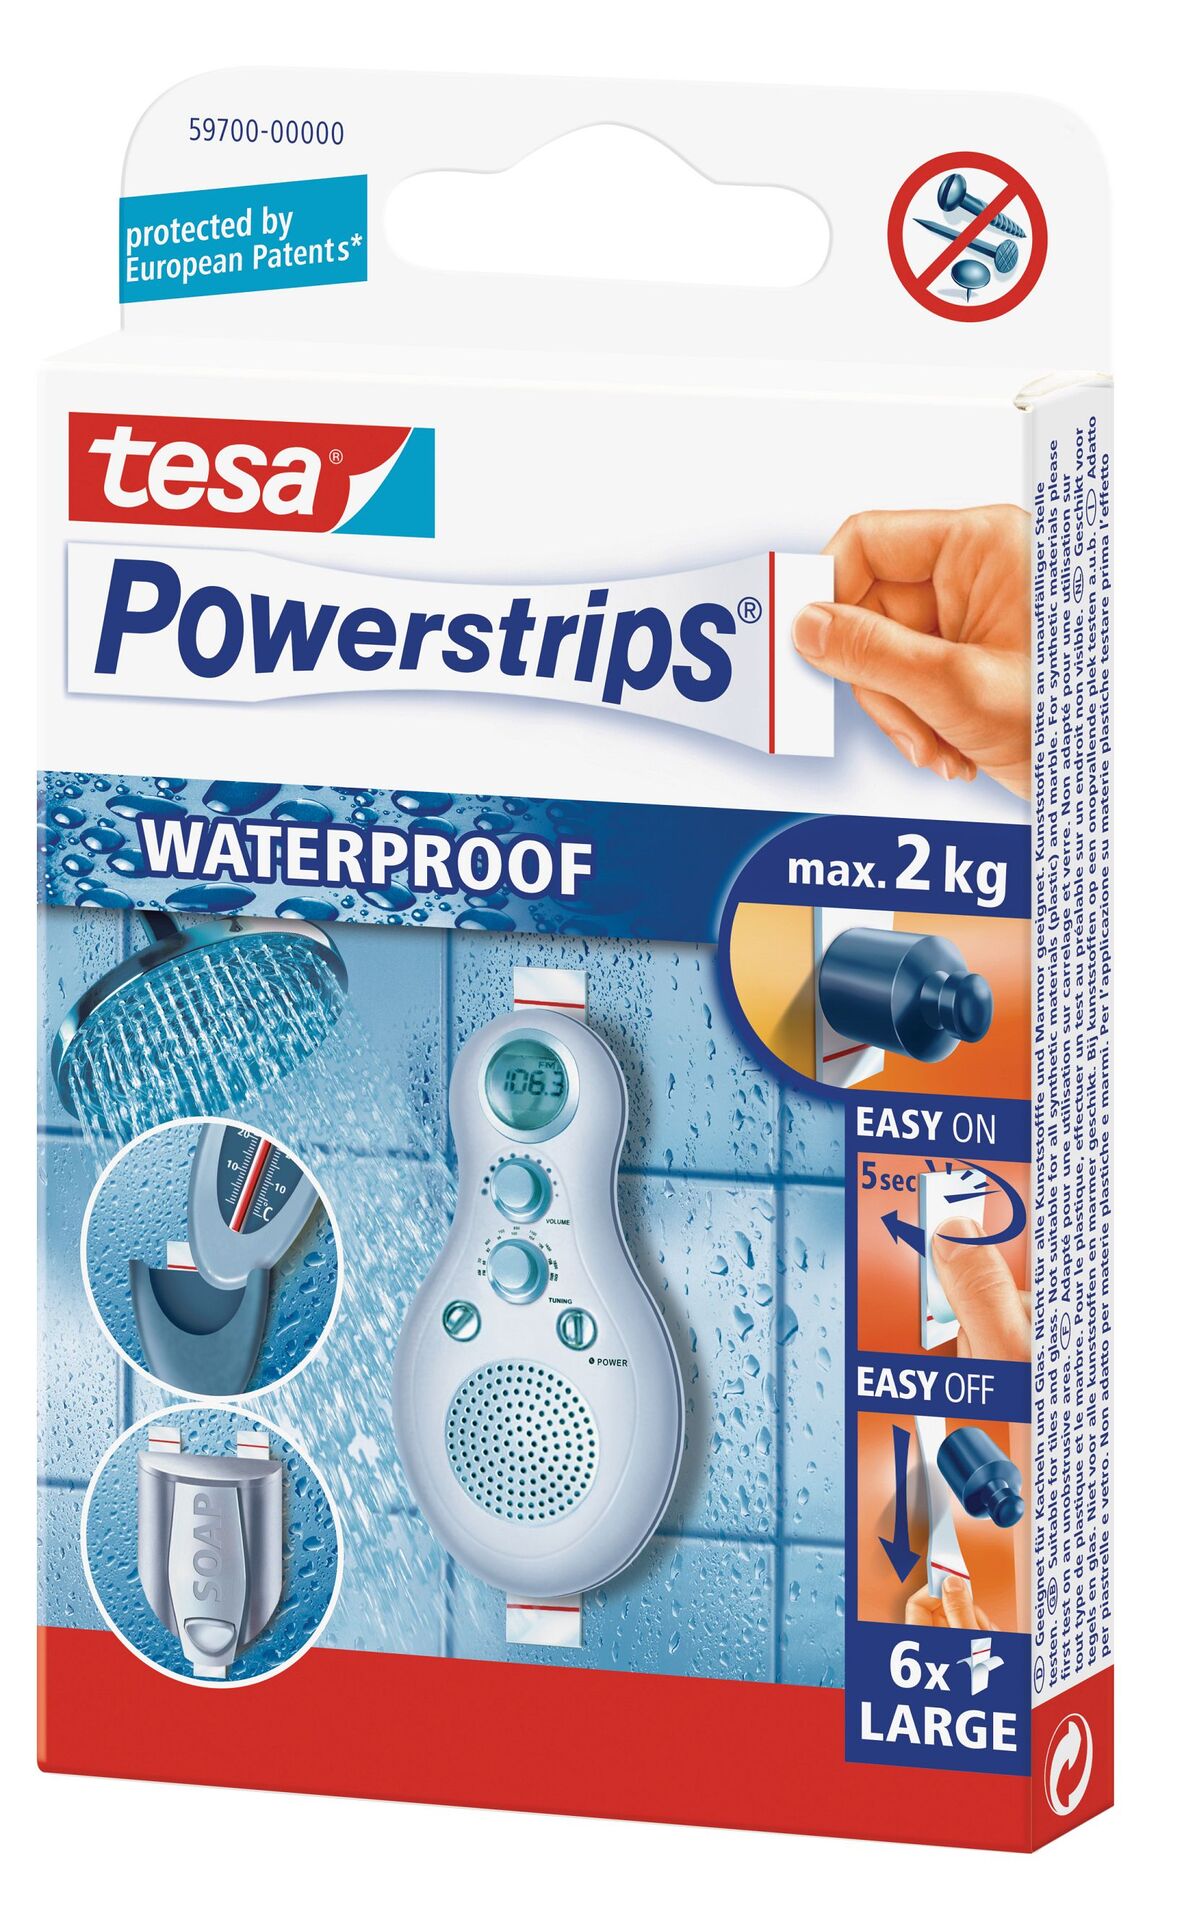 TESA SE Tesa Powerstrips Waterproof Large